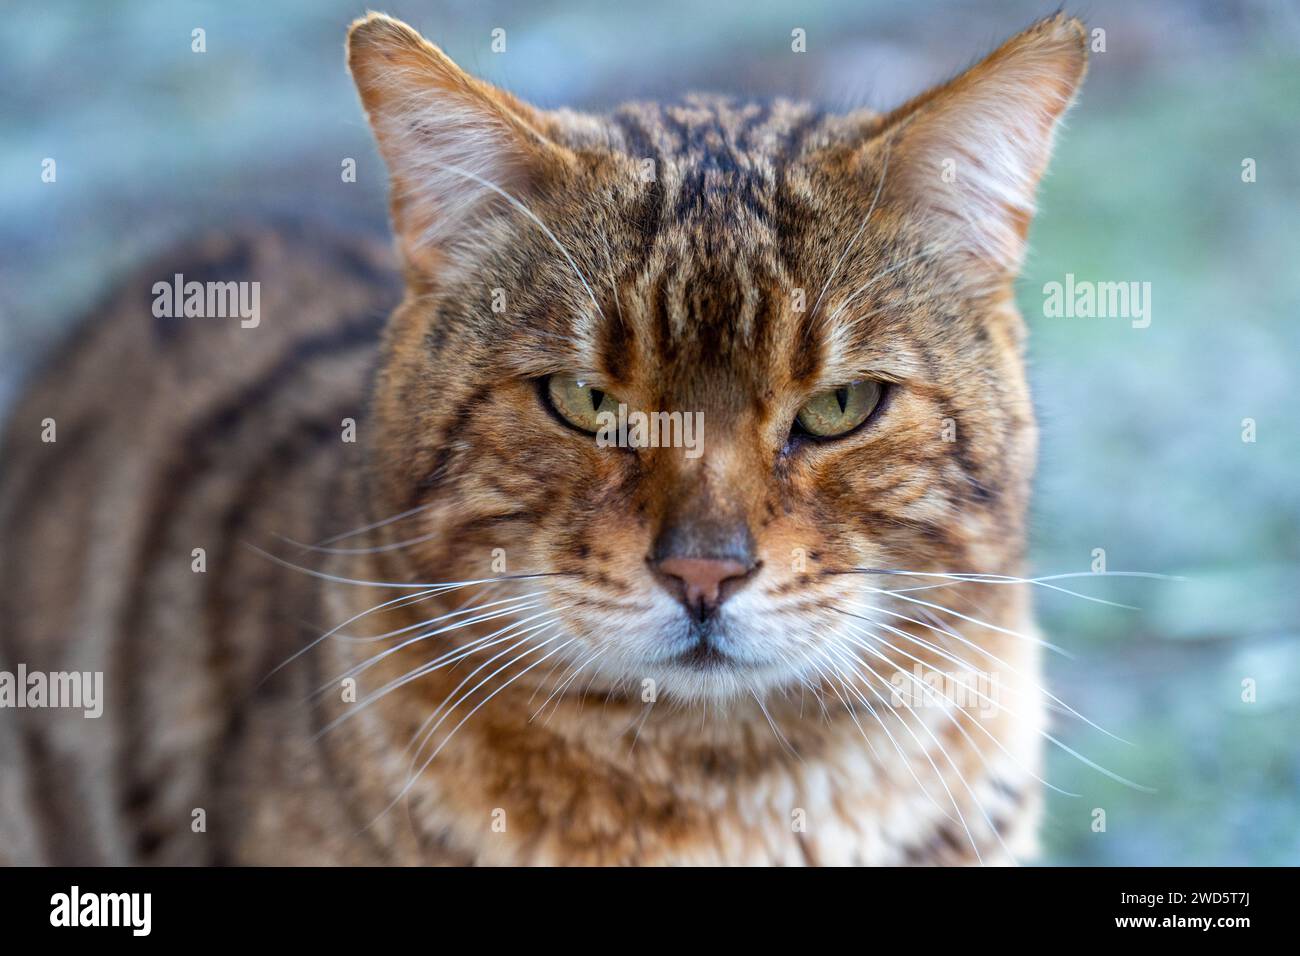 gros plan d'un chat domestique ordinaire ressemblant à un tigre trouvé dans la rue Banque D'Images